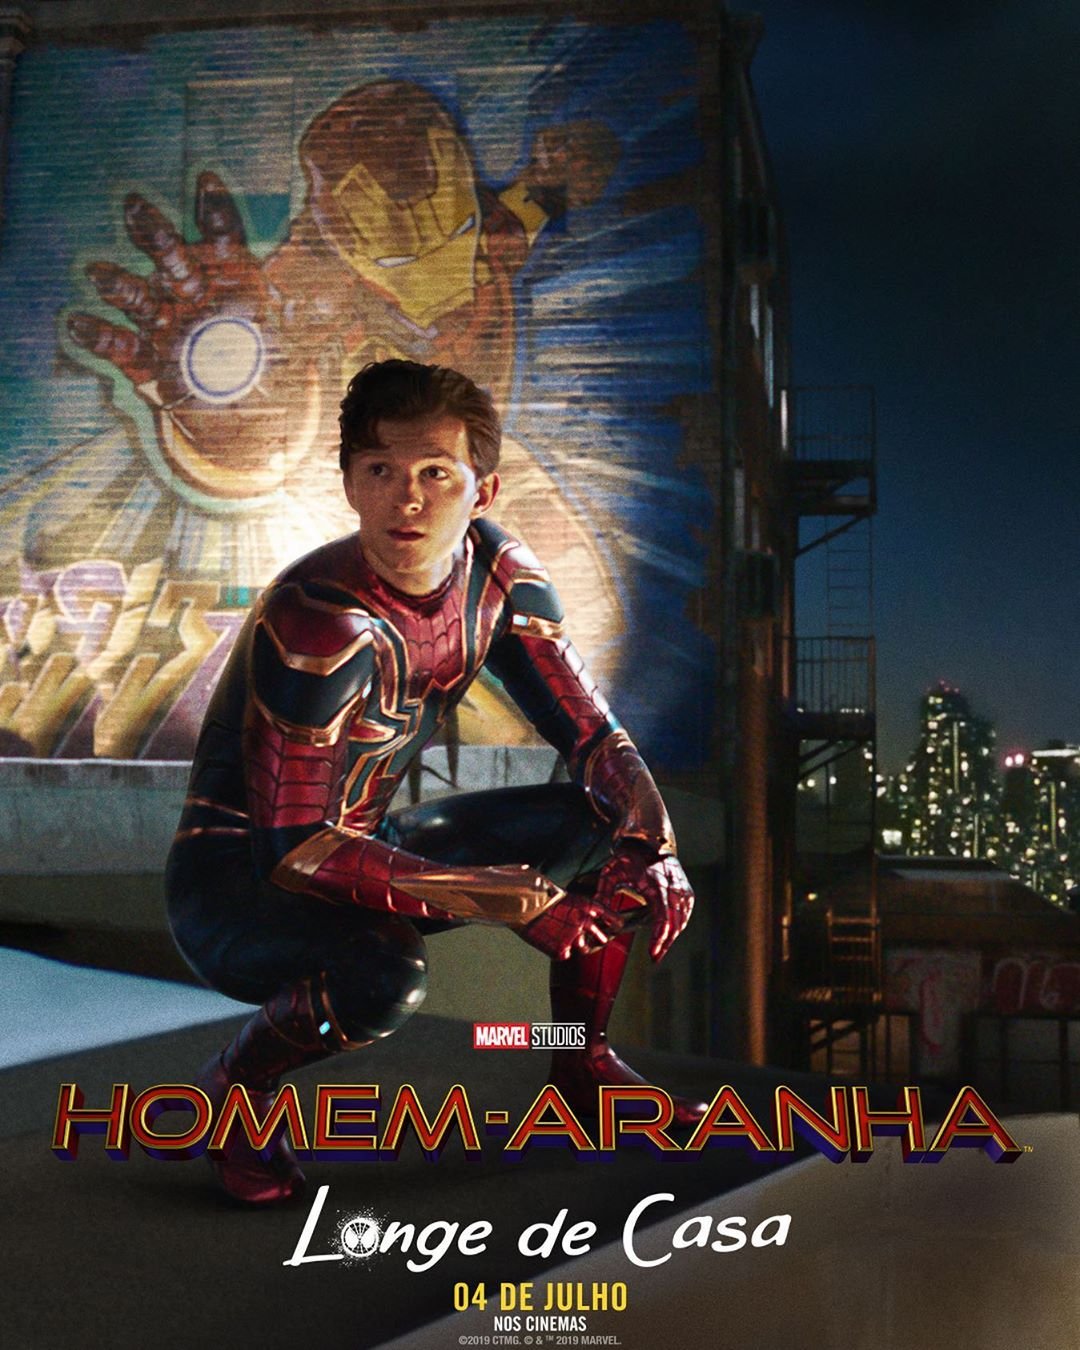 Homem-Aranha: Longe de Casa' é um dos melhores filmes da Marvel - Revista  Galileu